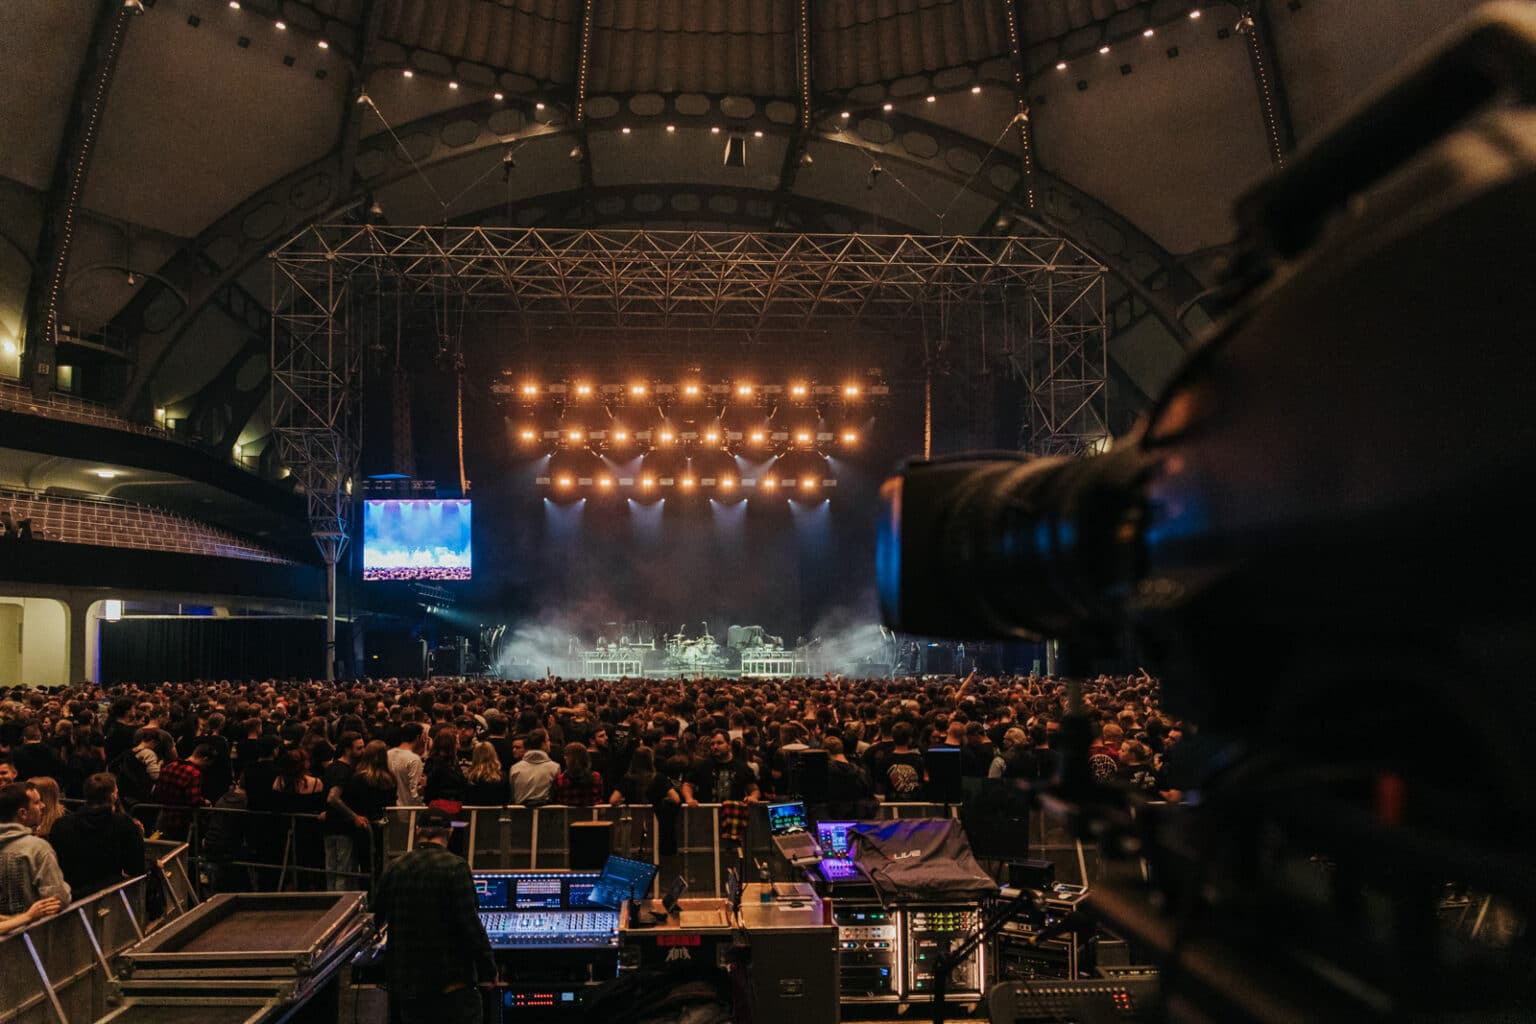 Konzertbühne in der Festhalle Frankfurt mit Kamera